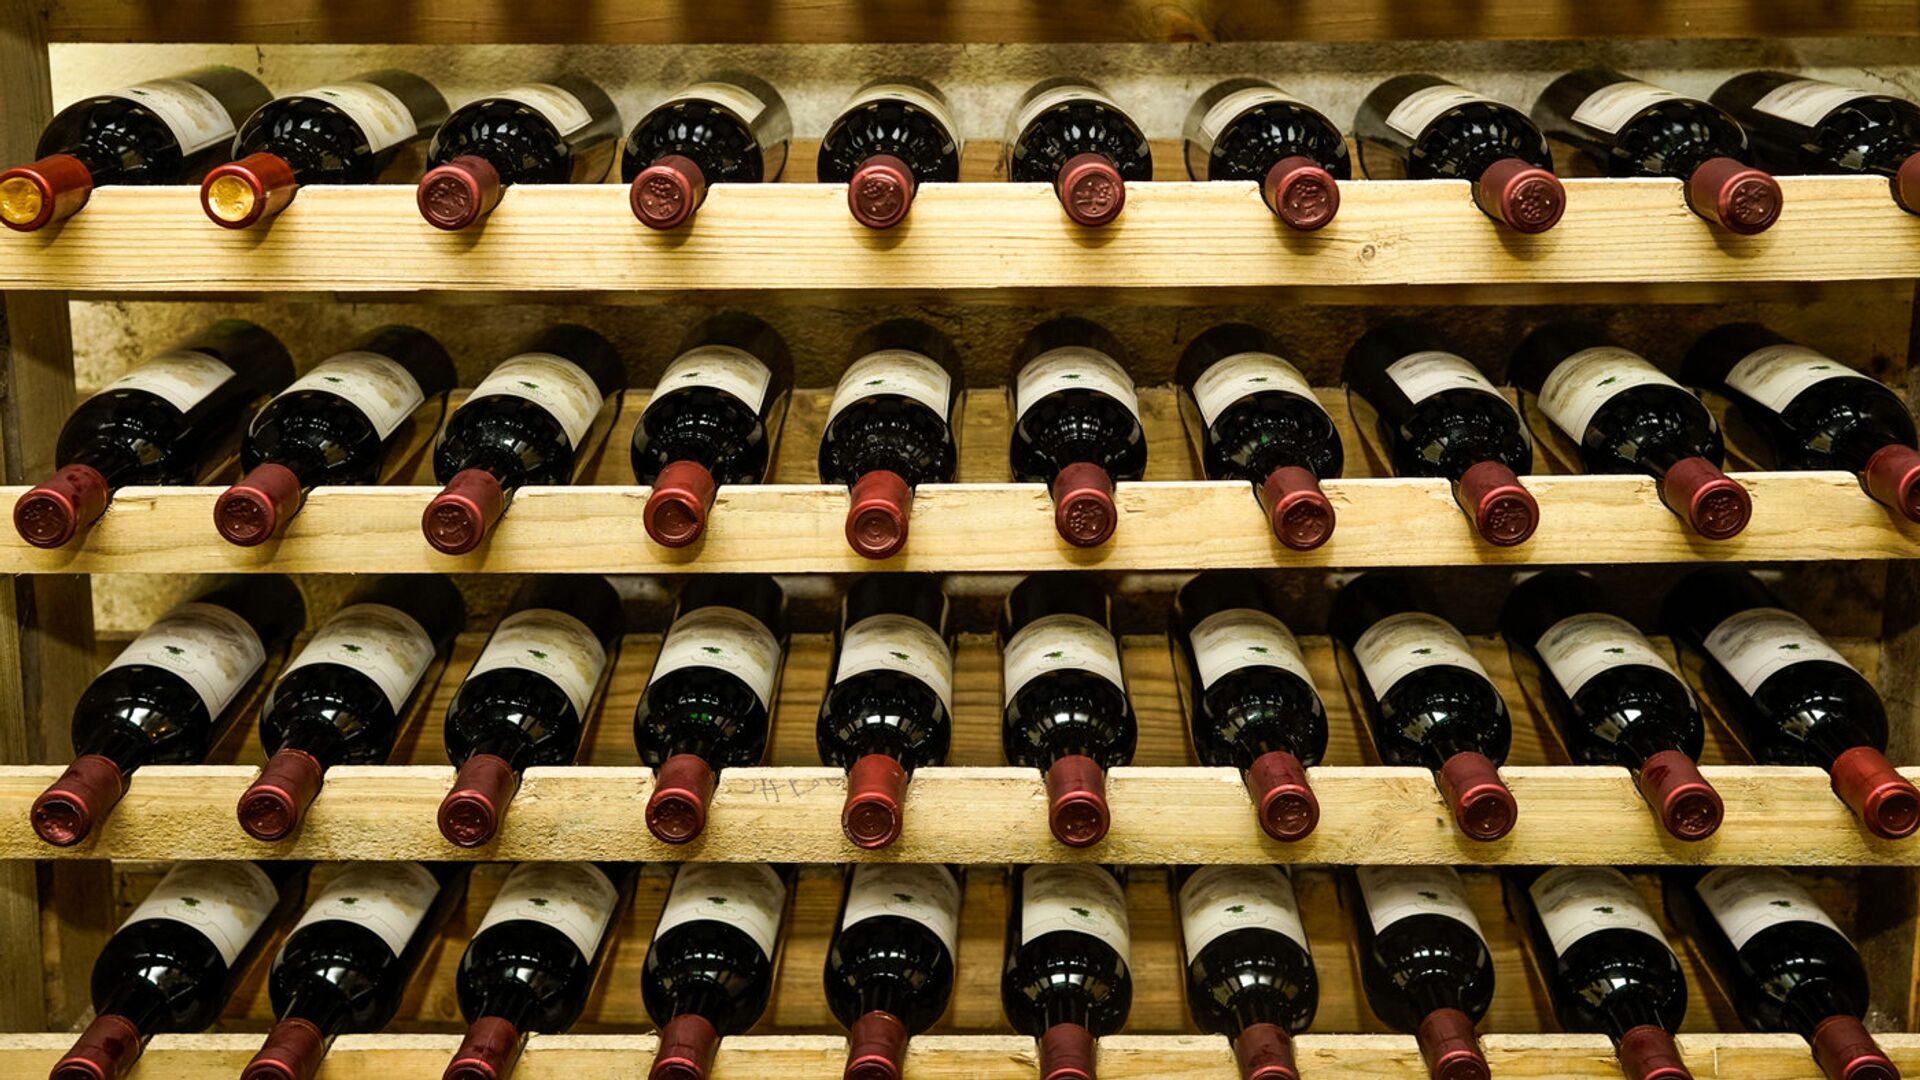 Винодельня производит 10000 бутылок в год - Sputnik Латвия, 1920, 30.11.2021